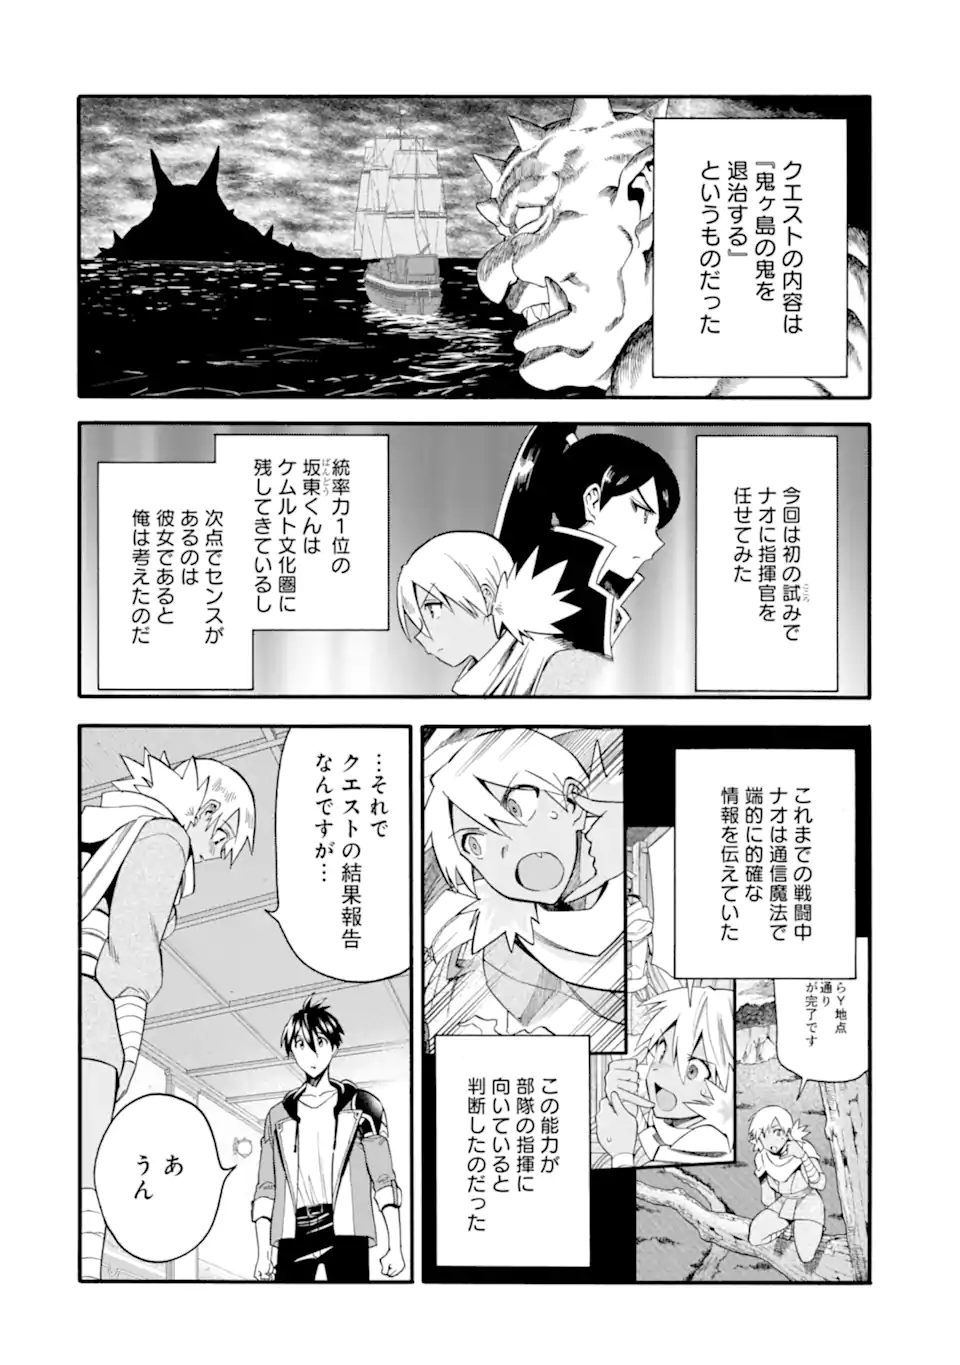 Ikusei Skill wa Mou Iranai to Yuusha Party o Kaiko Sareta no de, Taishoku Kingawari ni Moratta “Ryouchi” o Tsuyoku Shitemiru - Chapter 41.2 - Page 8